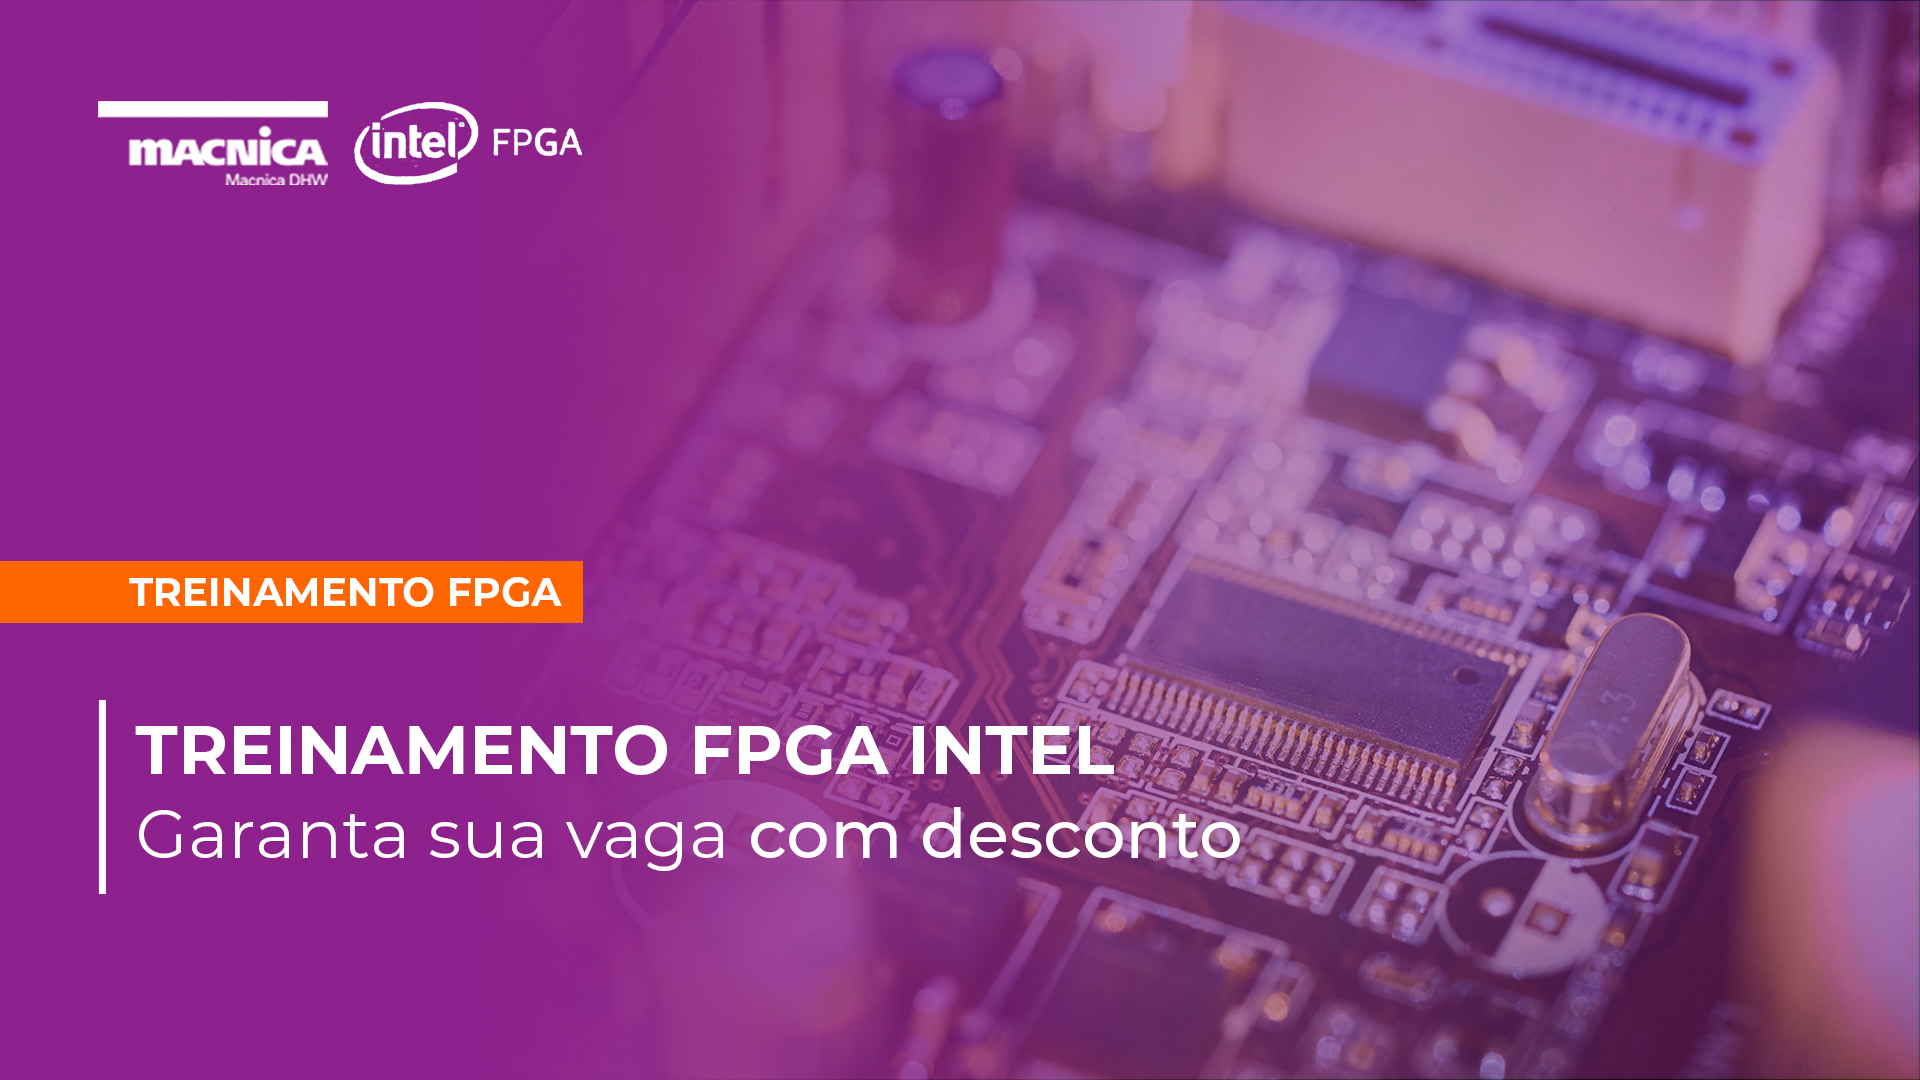 Garanta sua vaga no Treinamento FPGA Intel com desconto